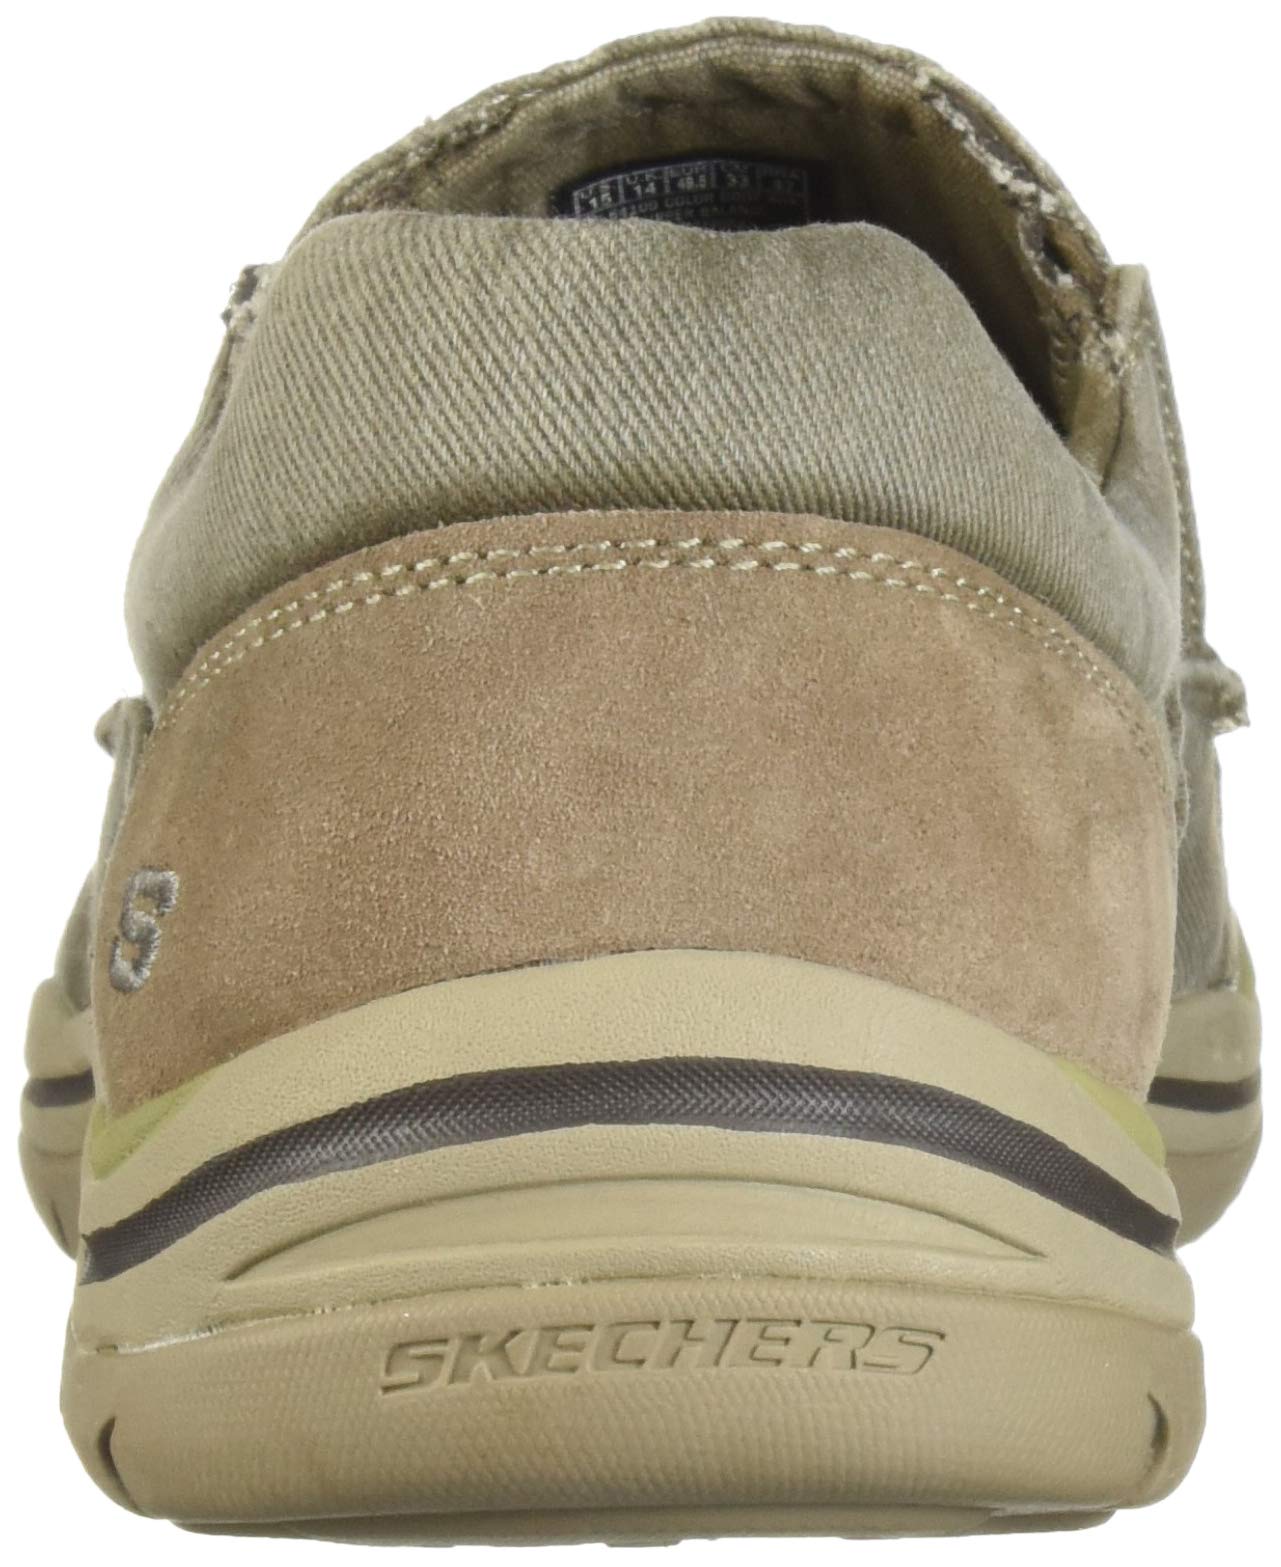 Skechers Men's Expected Avillo Relaxed-Fit Slip-On Loafer